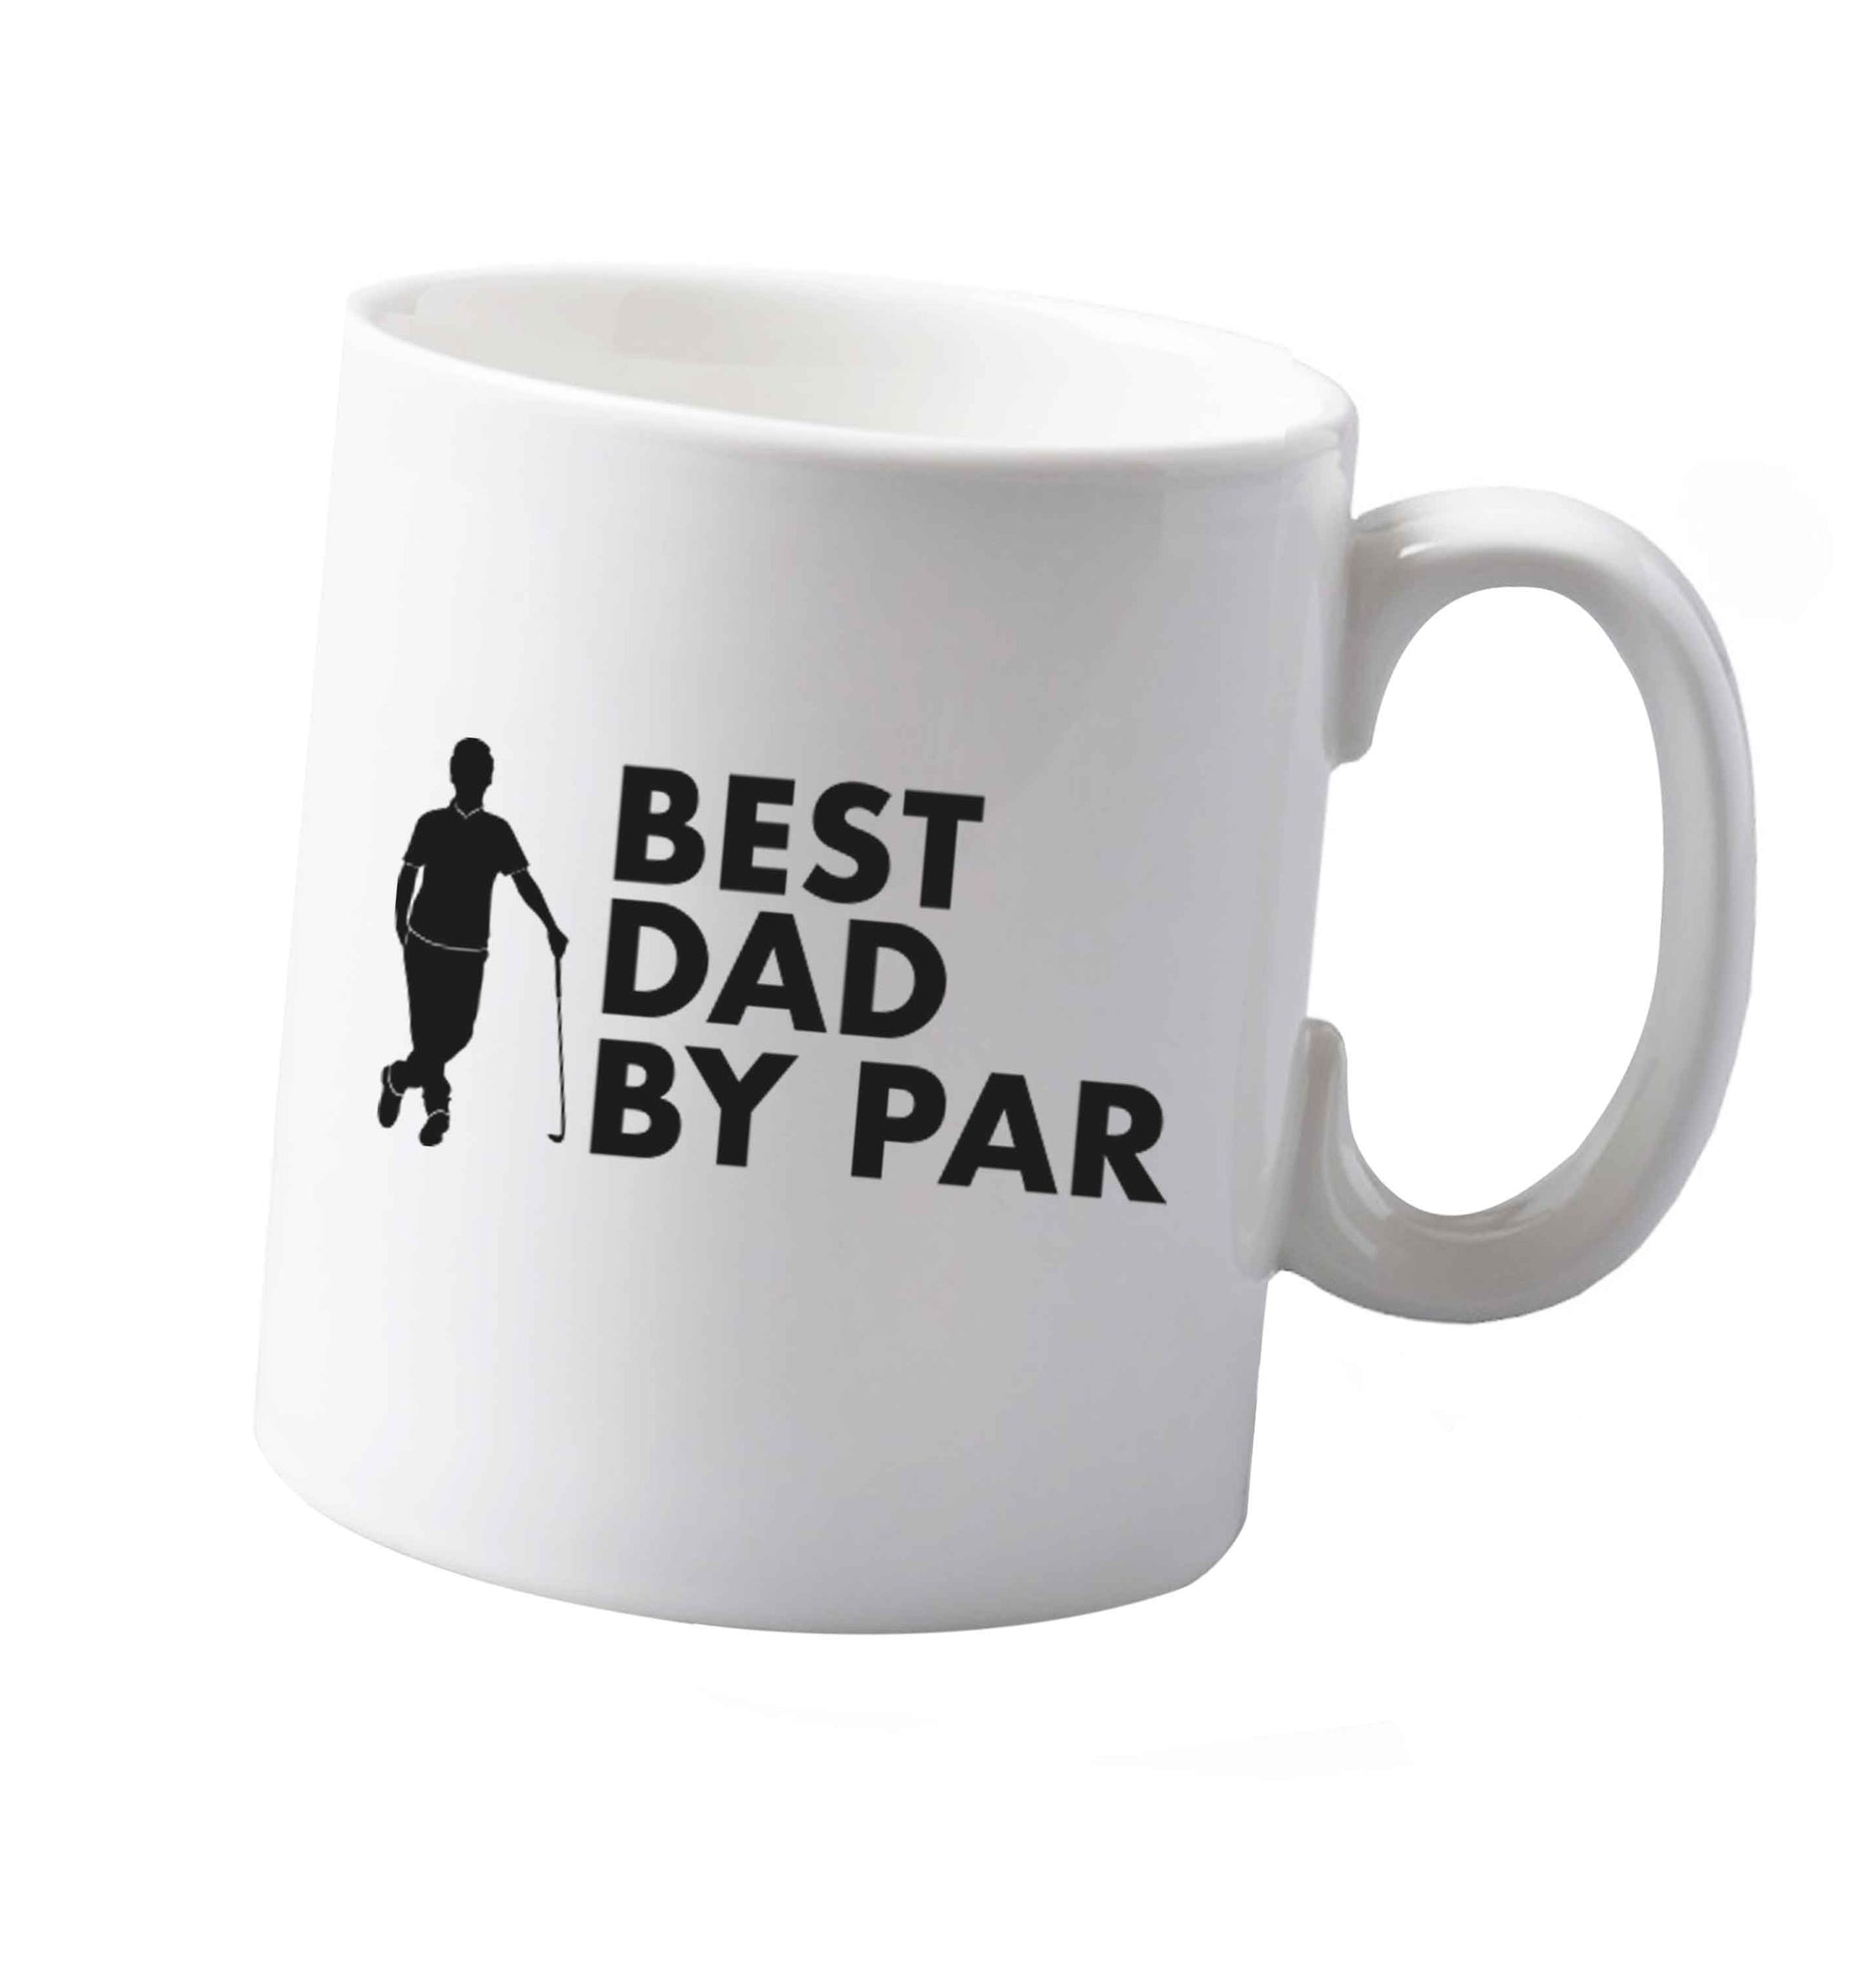 10 oz Best dad by par ceramic mug both sides